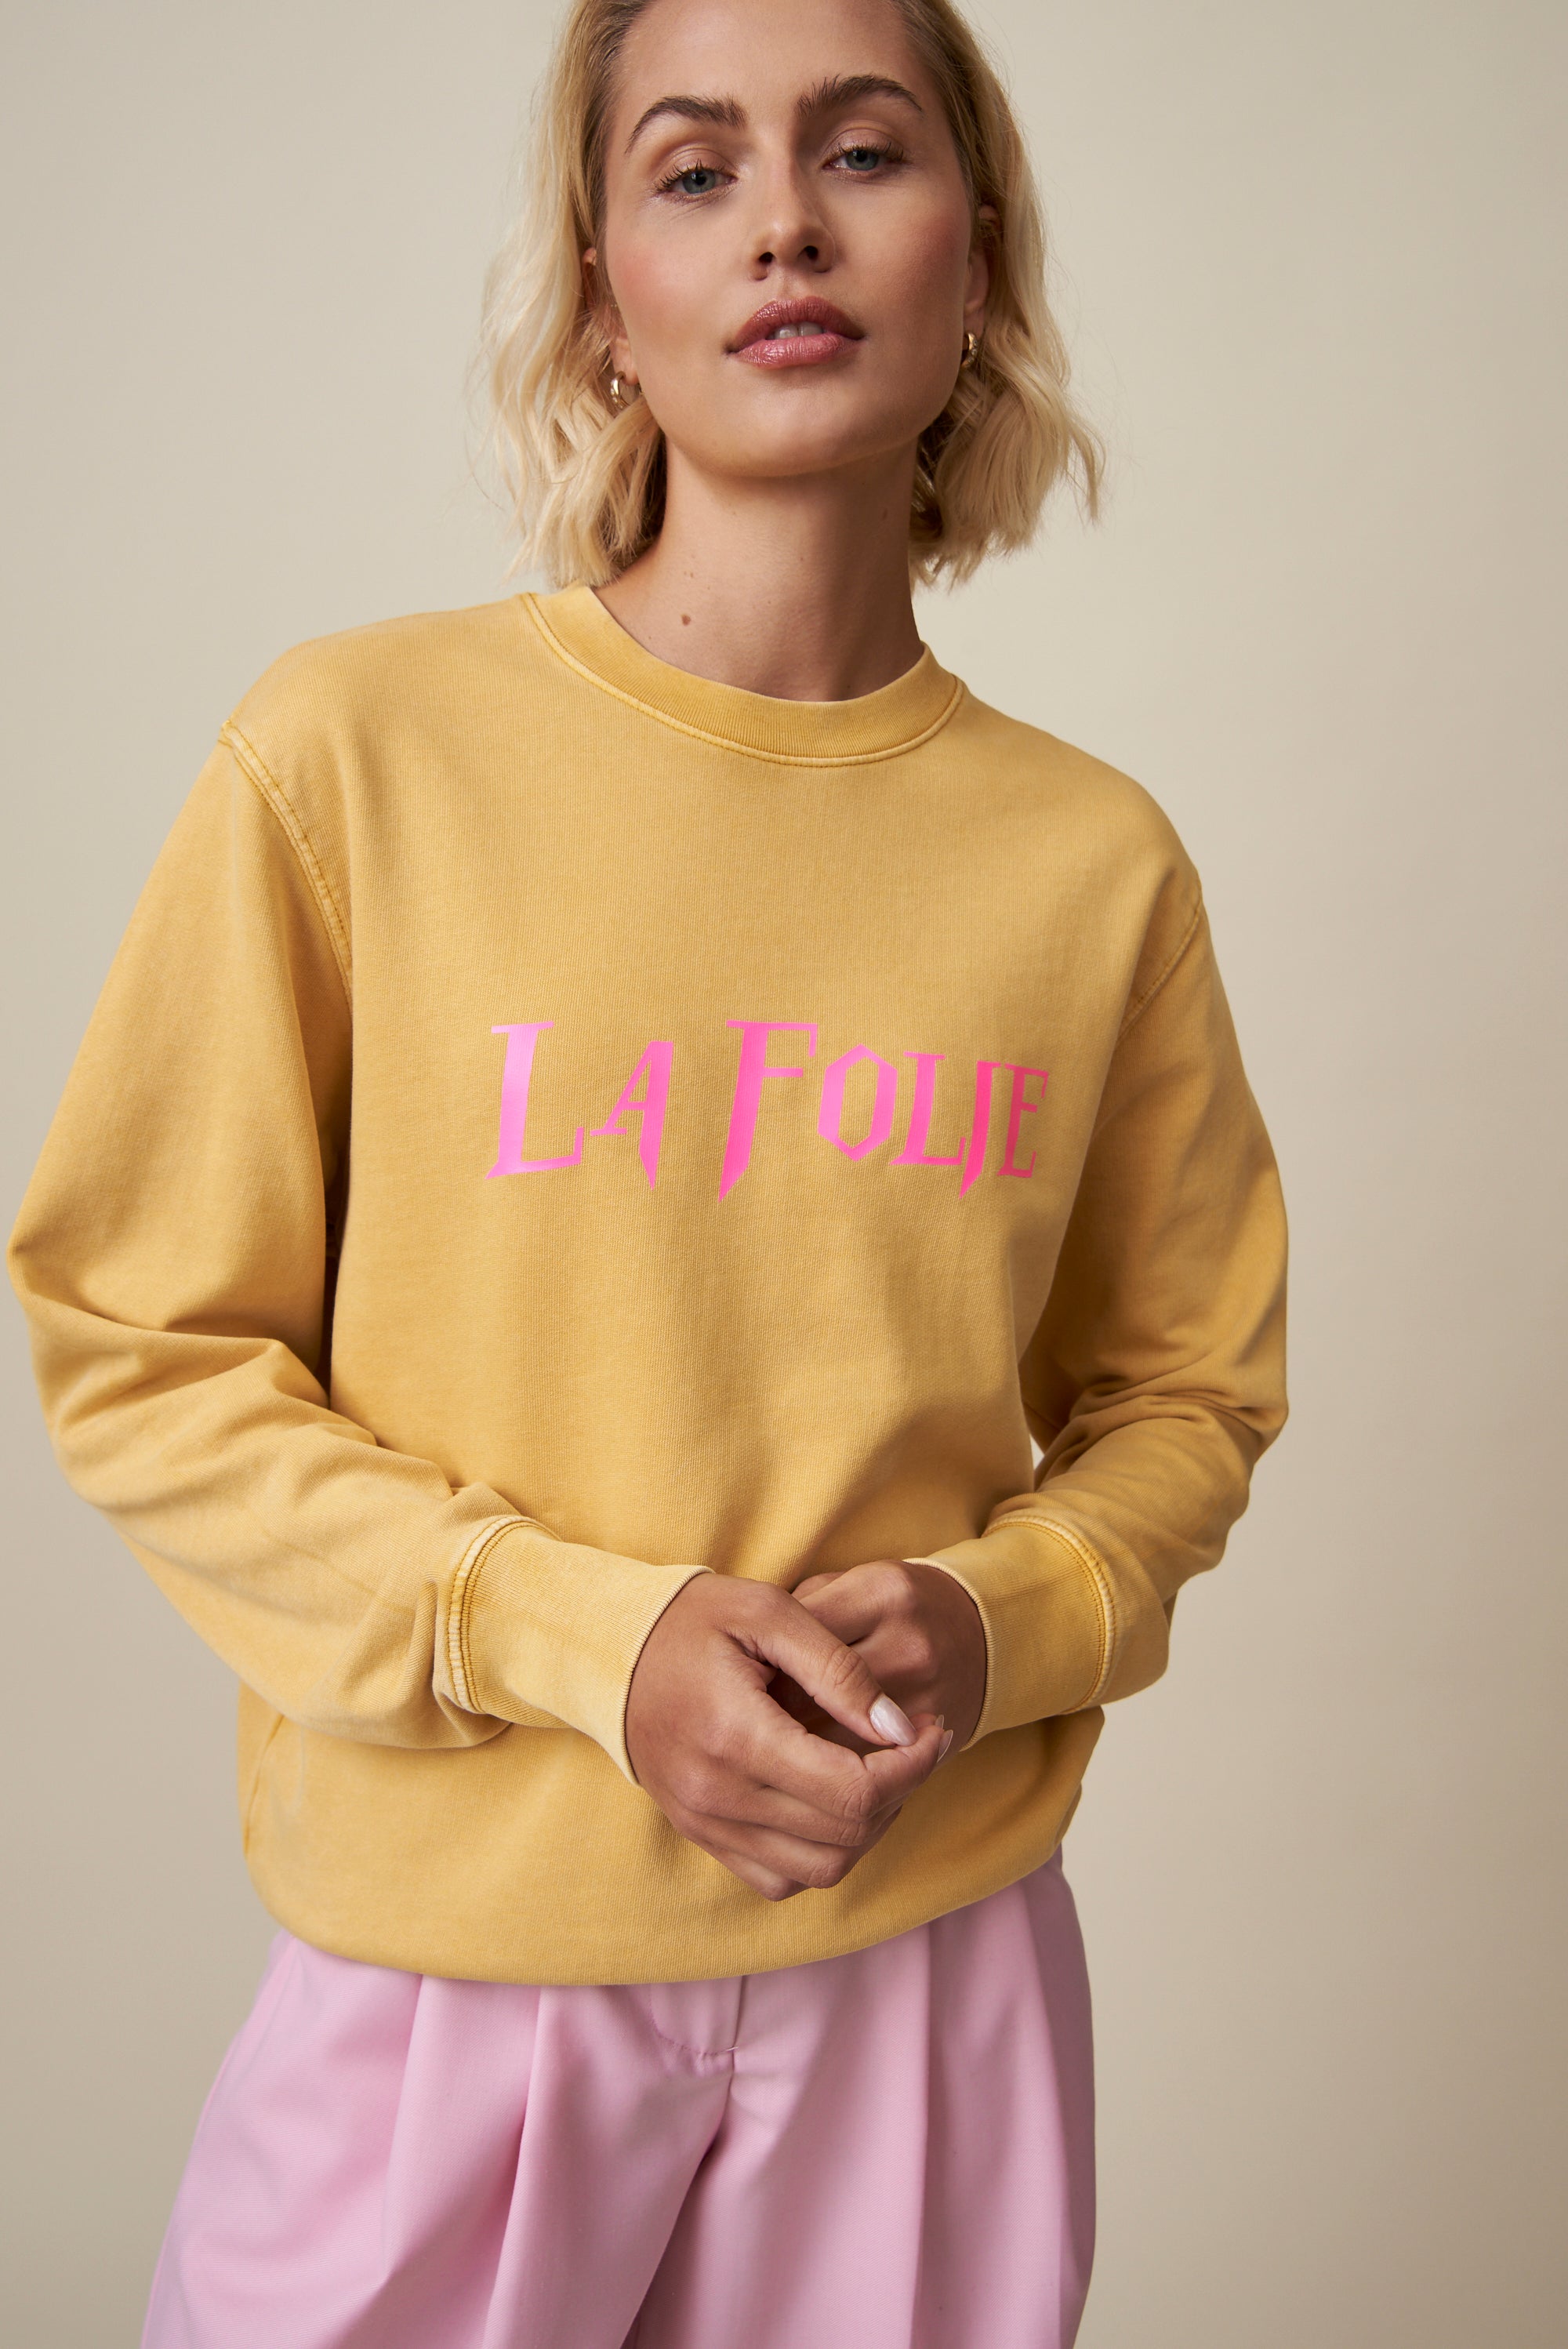 La Folie Sweatshirt - Ocker / Neonpink